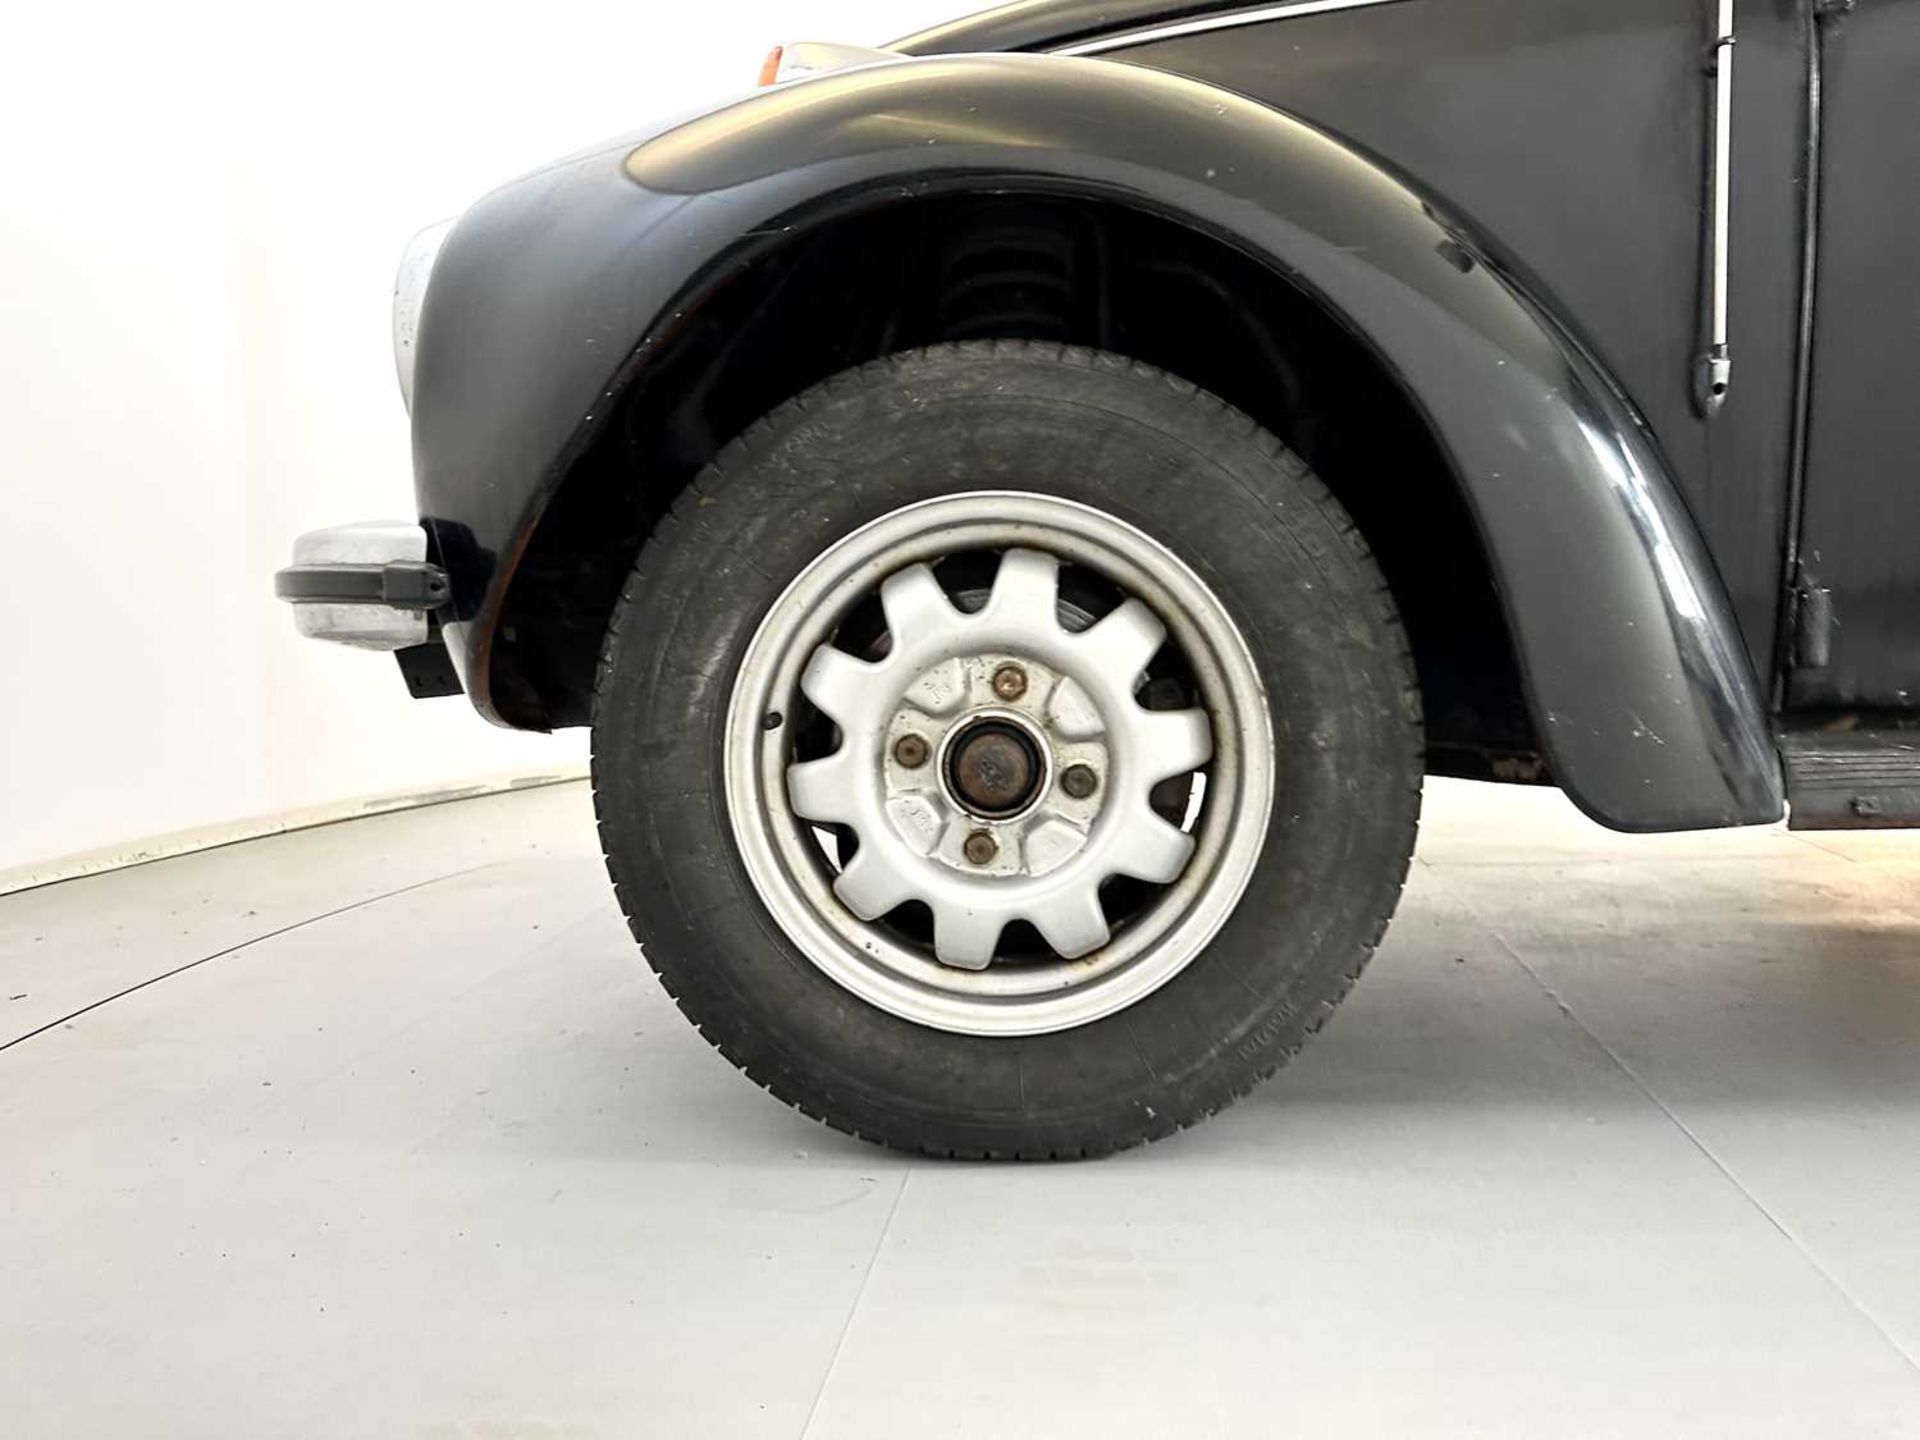 1971 Volkswagen Beetle - Image 15 of 29